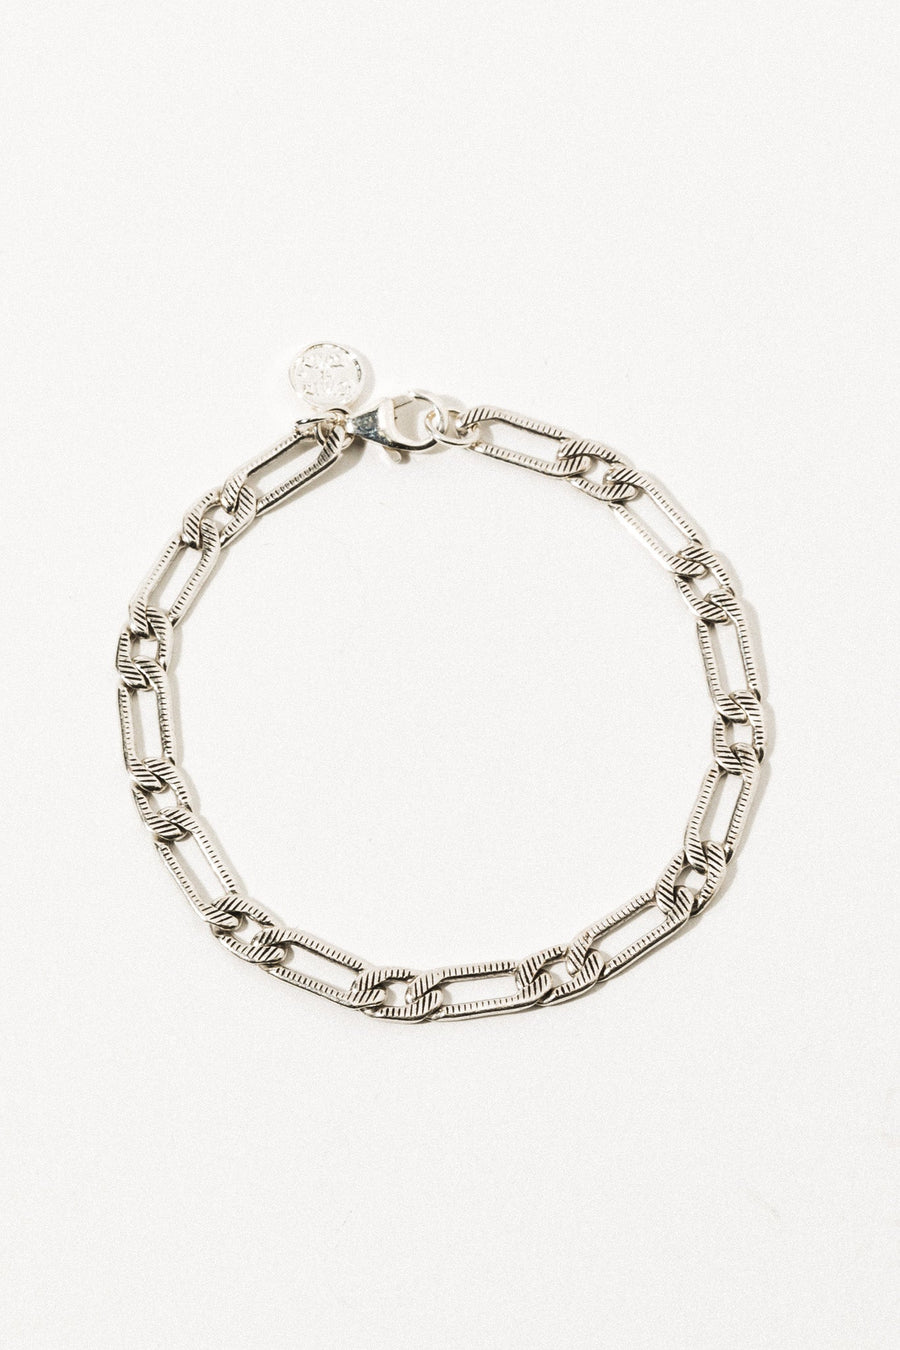 Goddess Jewelry Silver Aurelian Chain Bracelet